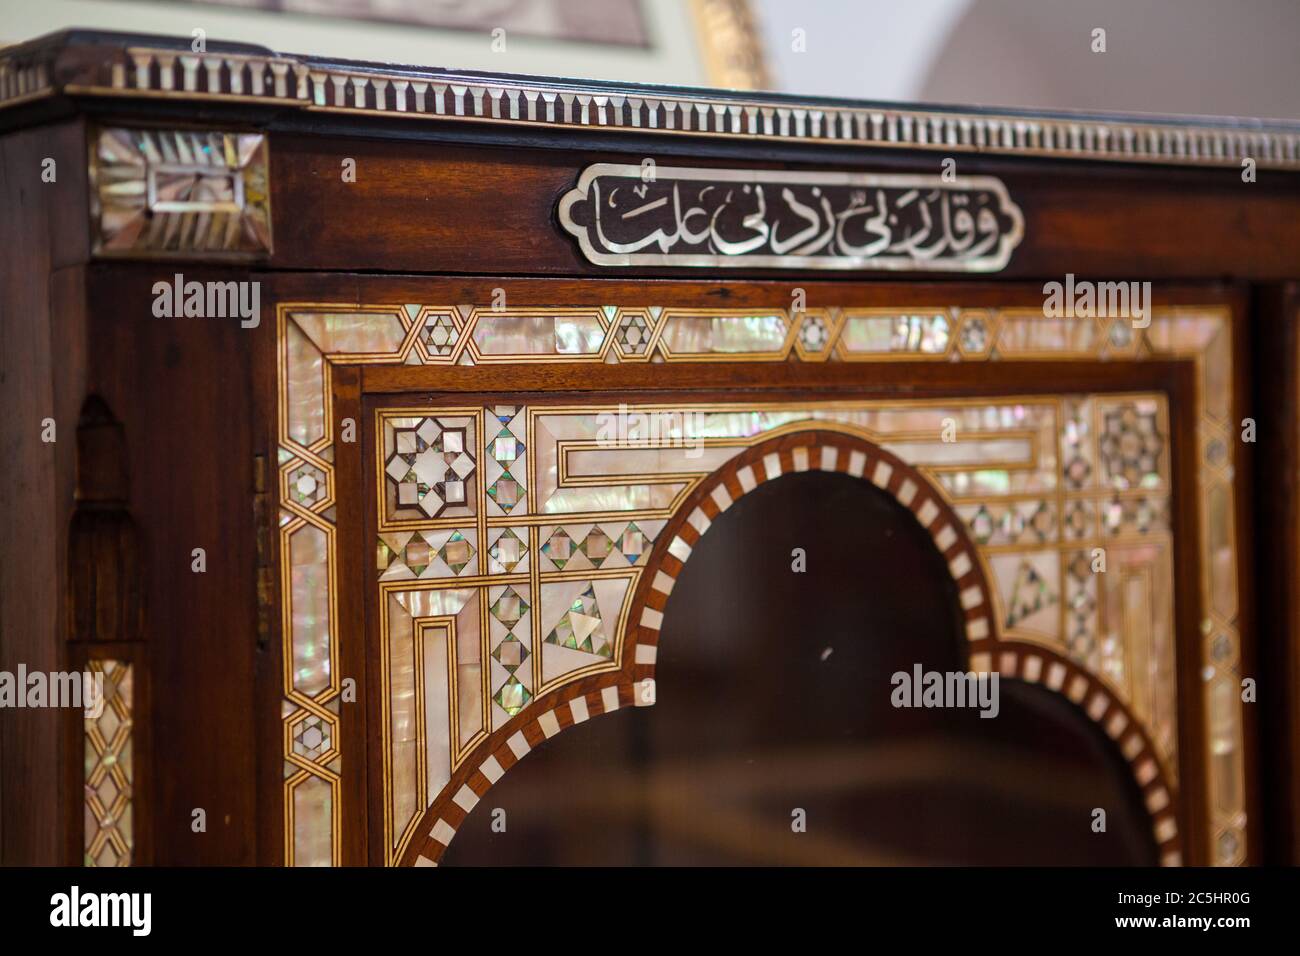 Sheikh Faisal bin Qassim Al Thani Museum in Al Samriya, Katar. Ein privates Museum, das für die Öffentlichkeit zugänglich ist, mit einer persönlichen Sammlung von Artefakten, einschließlich katarischer Herkunft, islamischer Kunst, Fahrzeugen, Haushaltsgegenständen und Antiquitäten. Stockfoto